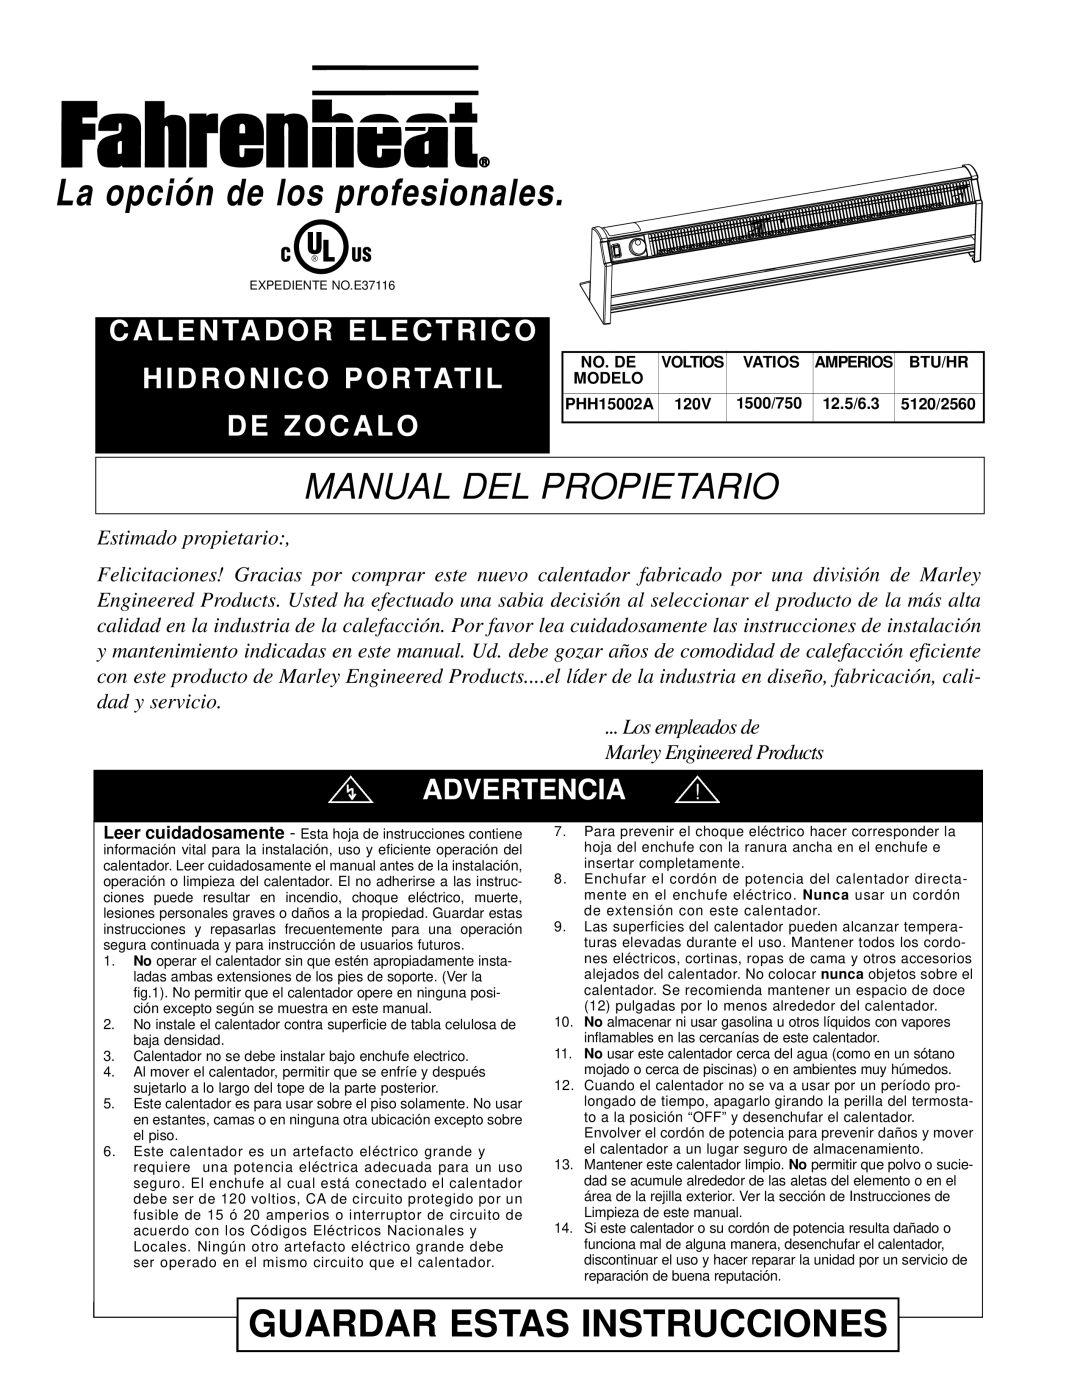 Nilfisk-ALTO PHH15002A Manual Del Propietario, H I D R O N I C O P O R Tat I L D E Z O C A L O, Advertencia, Voltios, 120V 